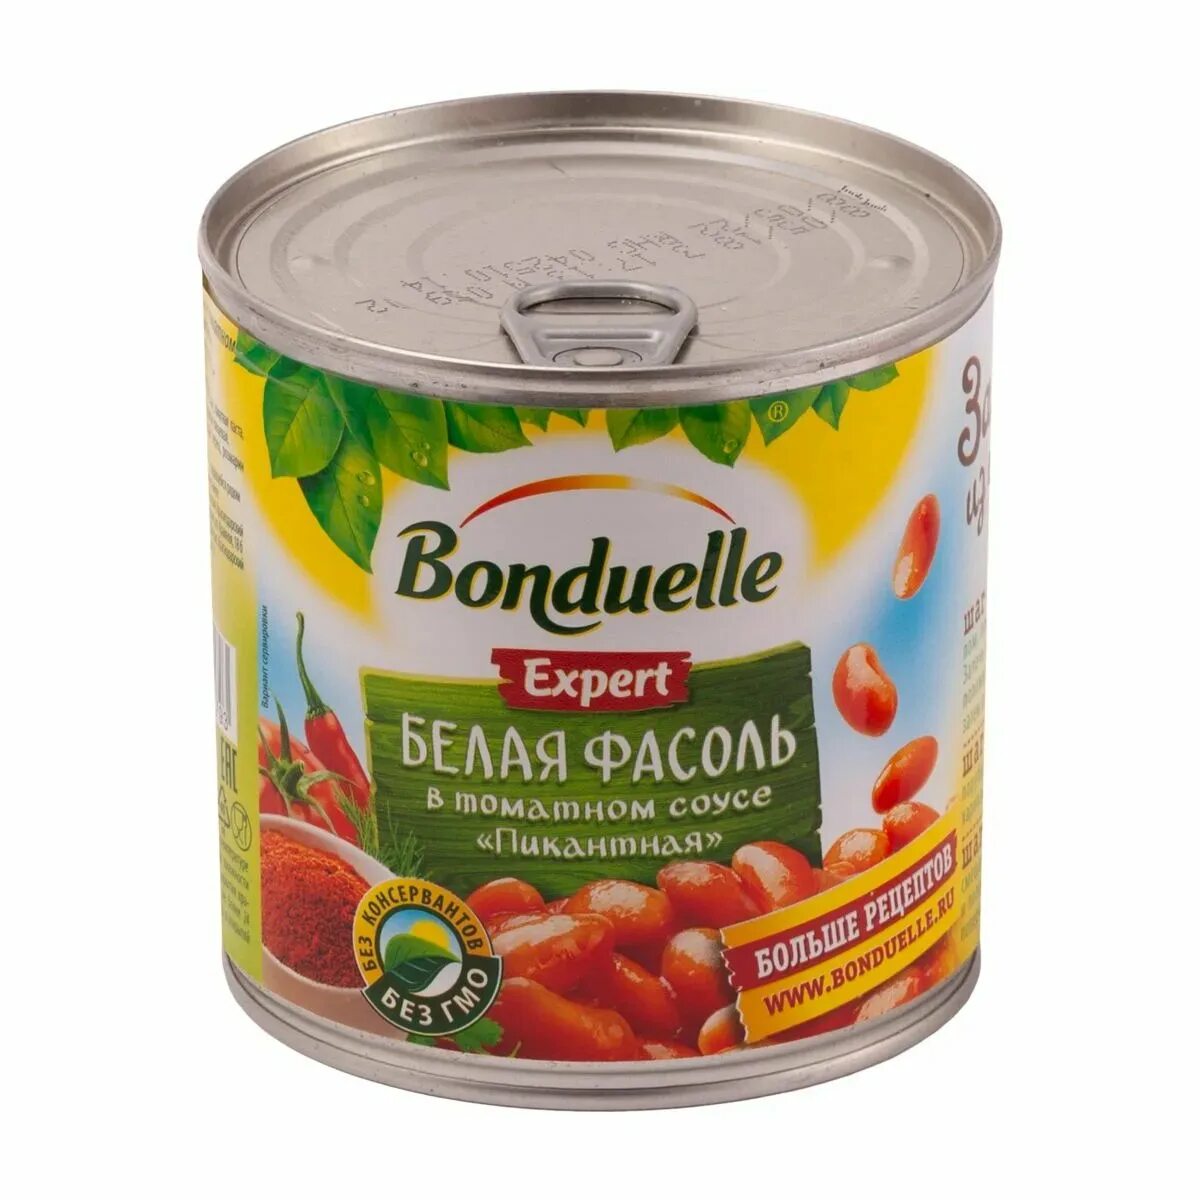 Фасоль в соусе купить. Фасоль Bonduelle красная Чили 425мл. Фасоль 425 Бондюэль белая в томатном соусе. Фасоль Бондюэль белая в том соусе 430г/425мл ж/б. Bonduelle фасоль Чили 425мл(Бондюэль):12.